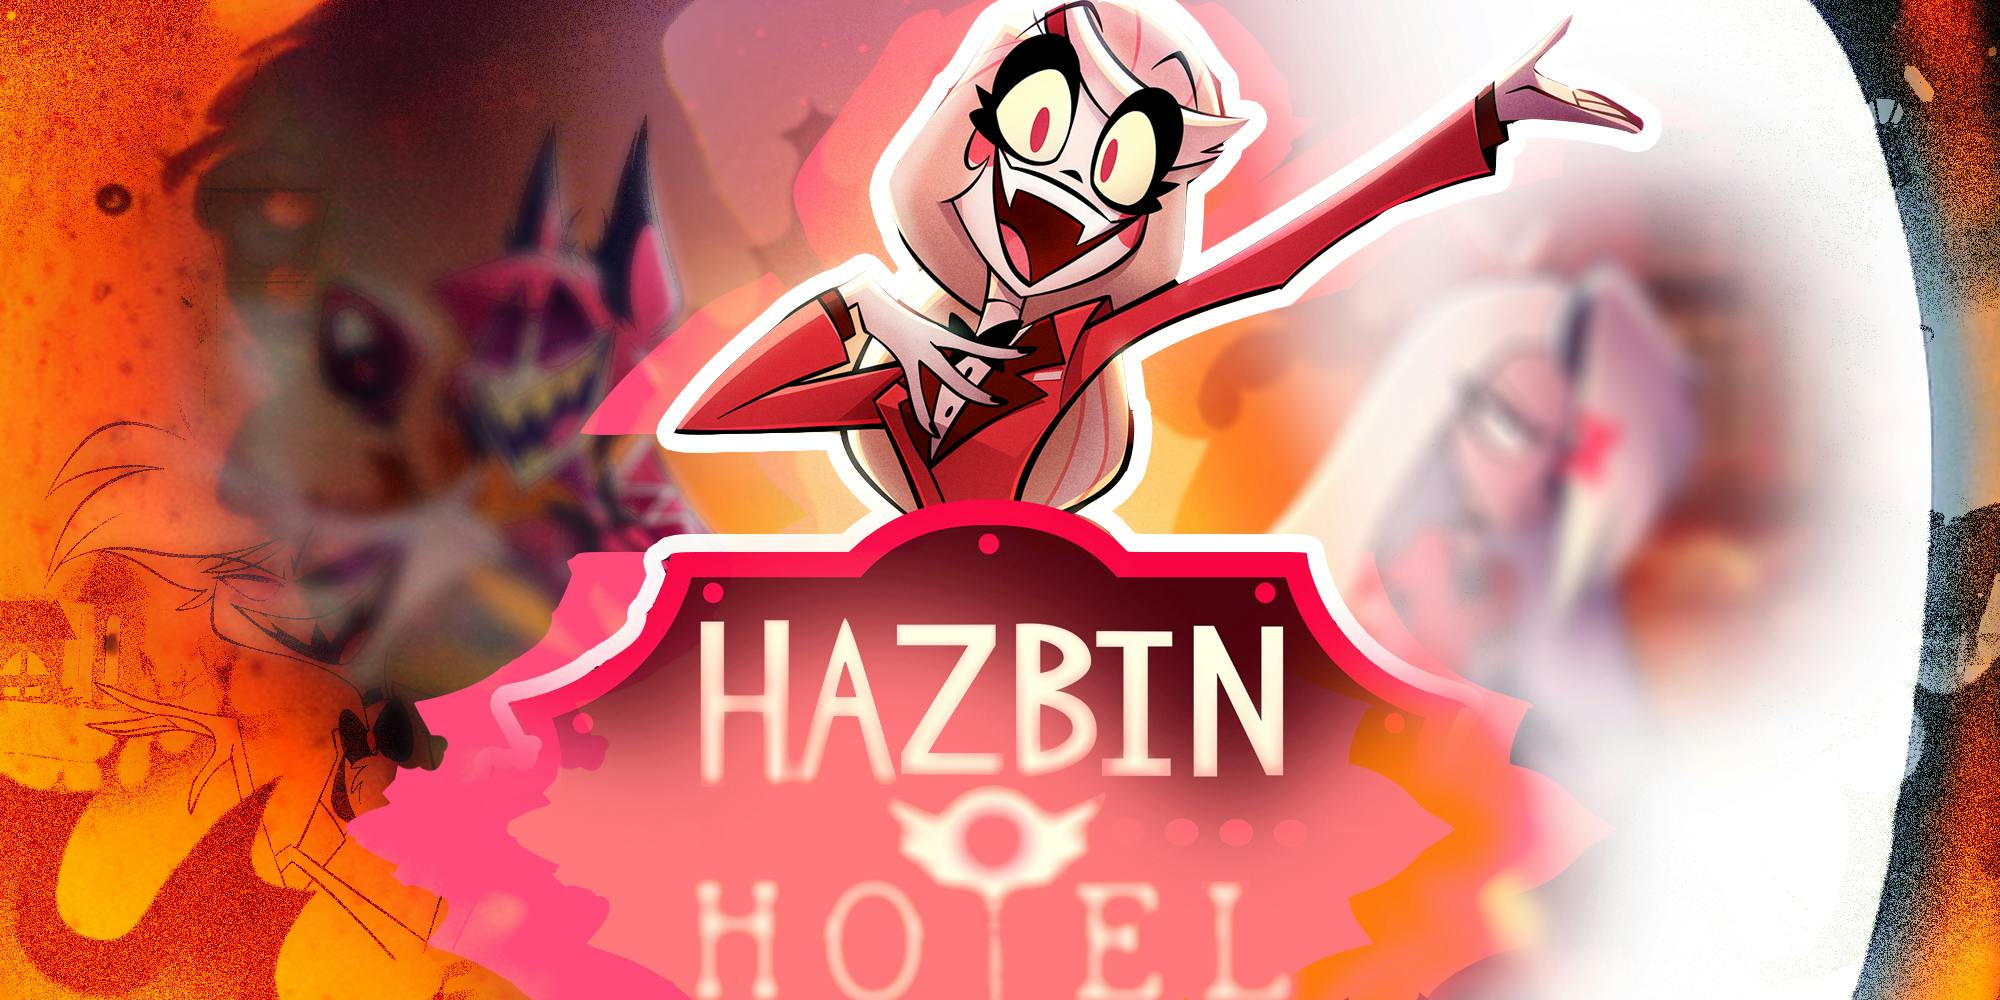 Hazbin hotel graphic spindlehorse toons studio vivienne medrano vivziepop